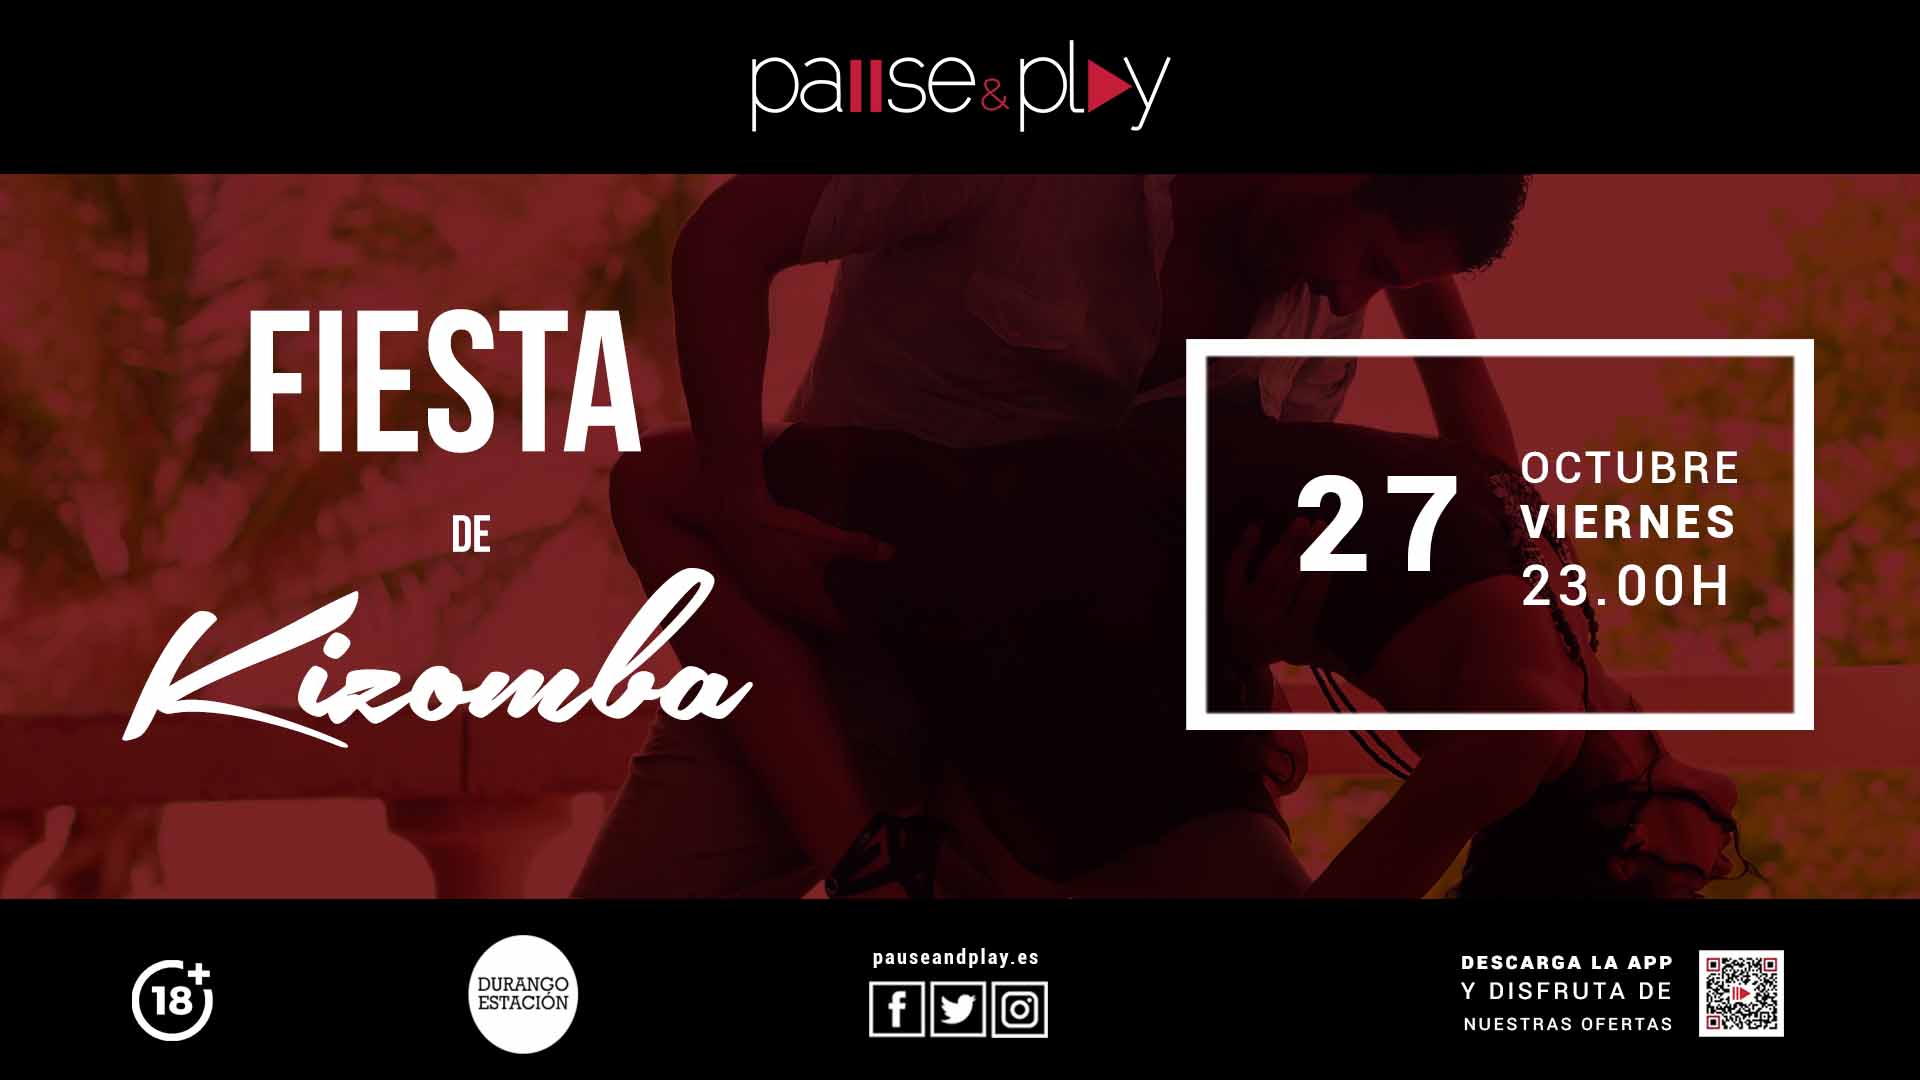 PAUSE&PLAY DURANGO ESTACIÓN